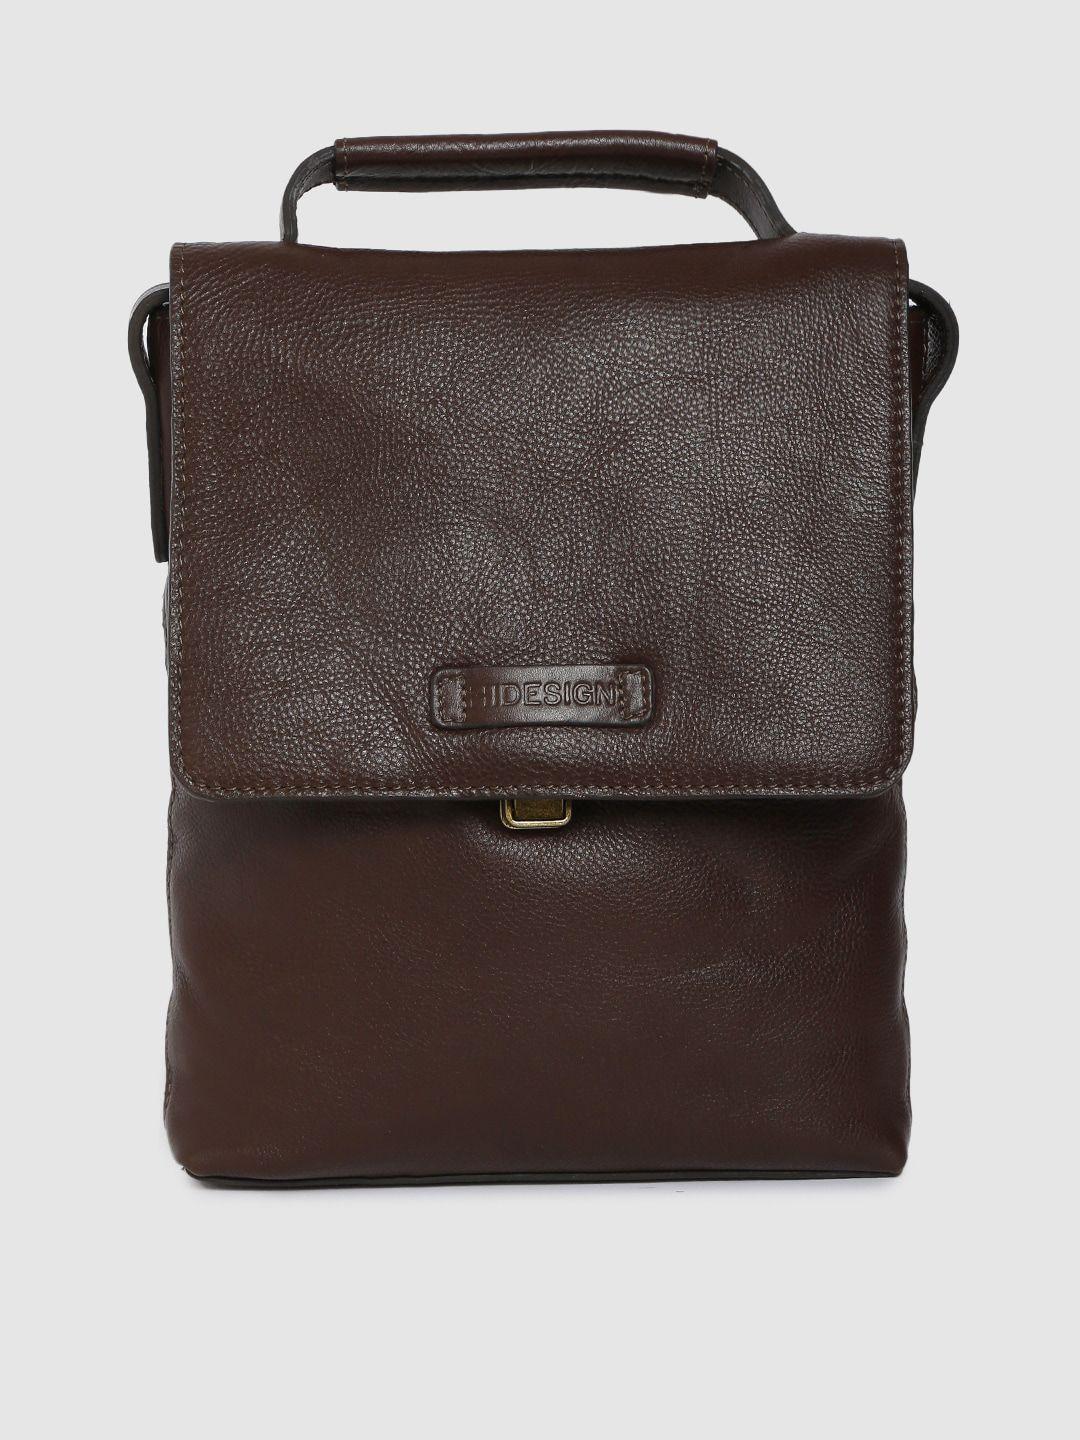 hidesign men brown solid ee orion 01 leather messenger bag